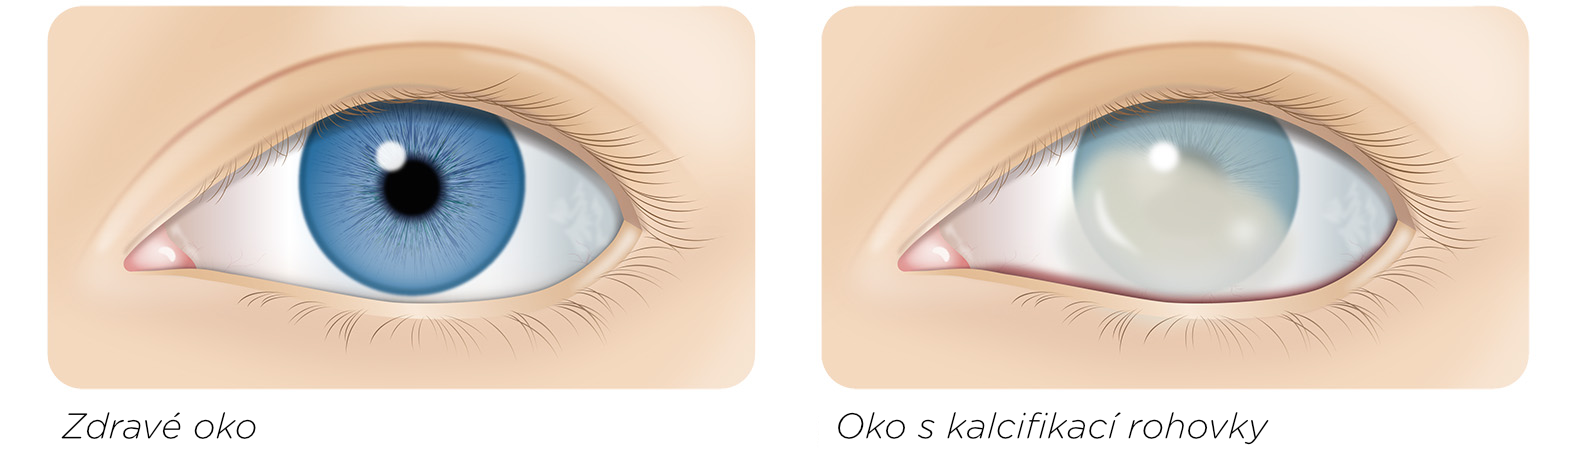 Zdravé oko versus oko s kalcifikací rohovky